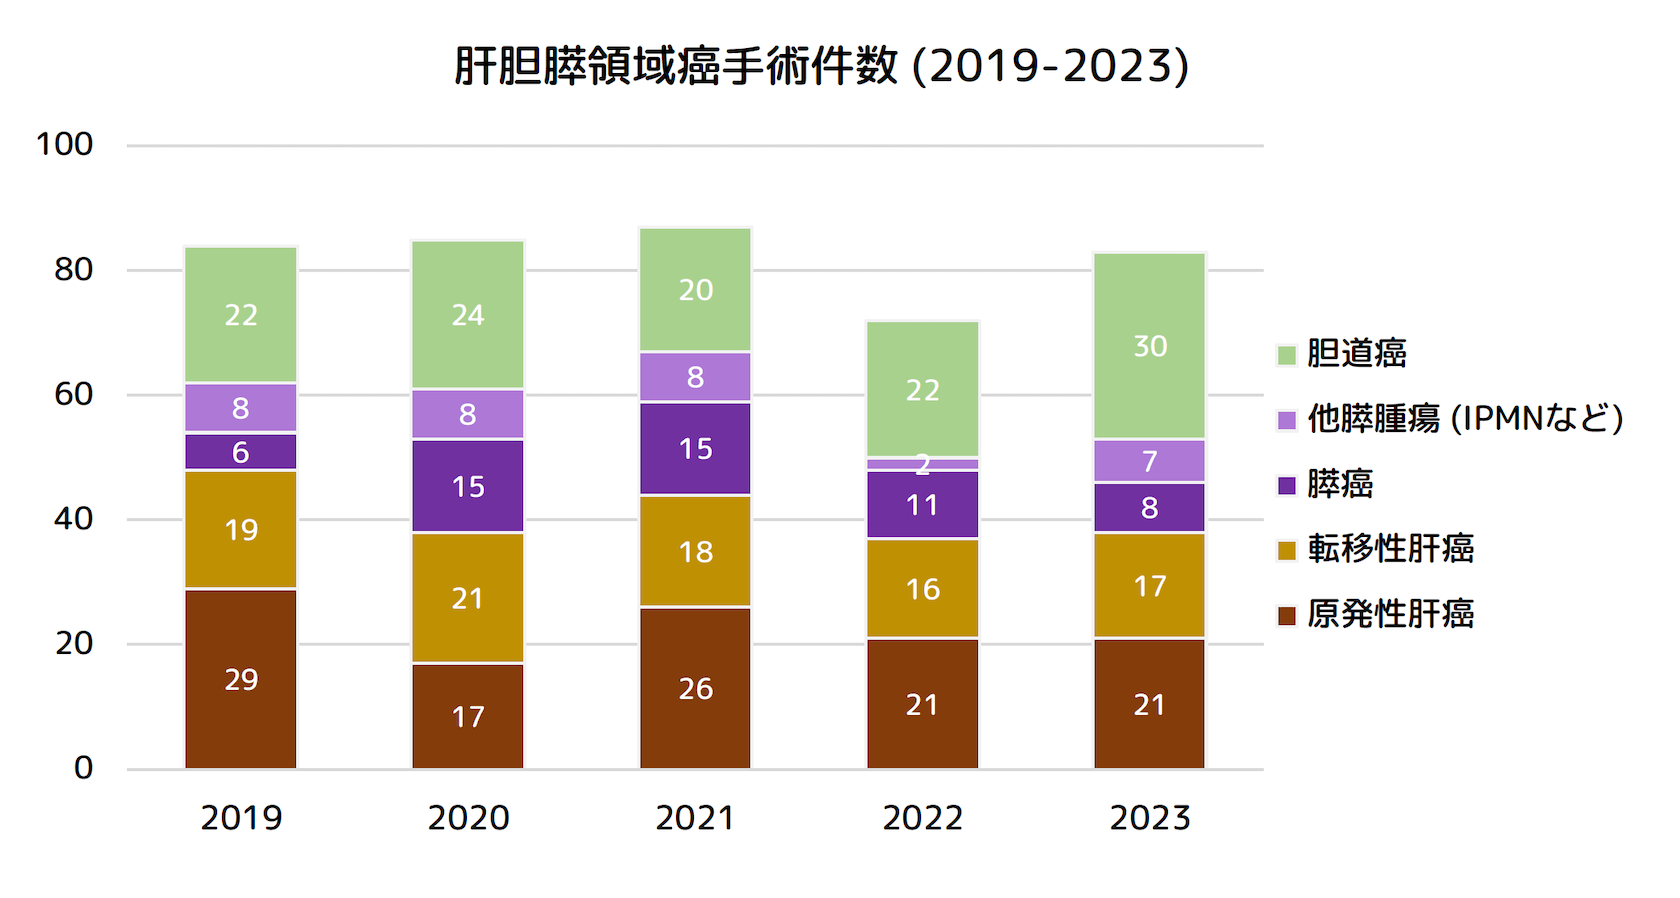 肝胆膵領域癌手術件数 (2019-2023)